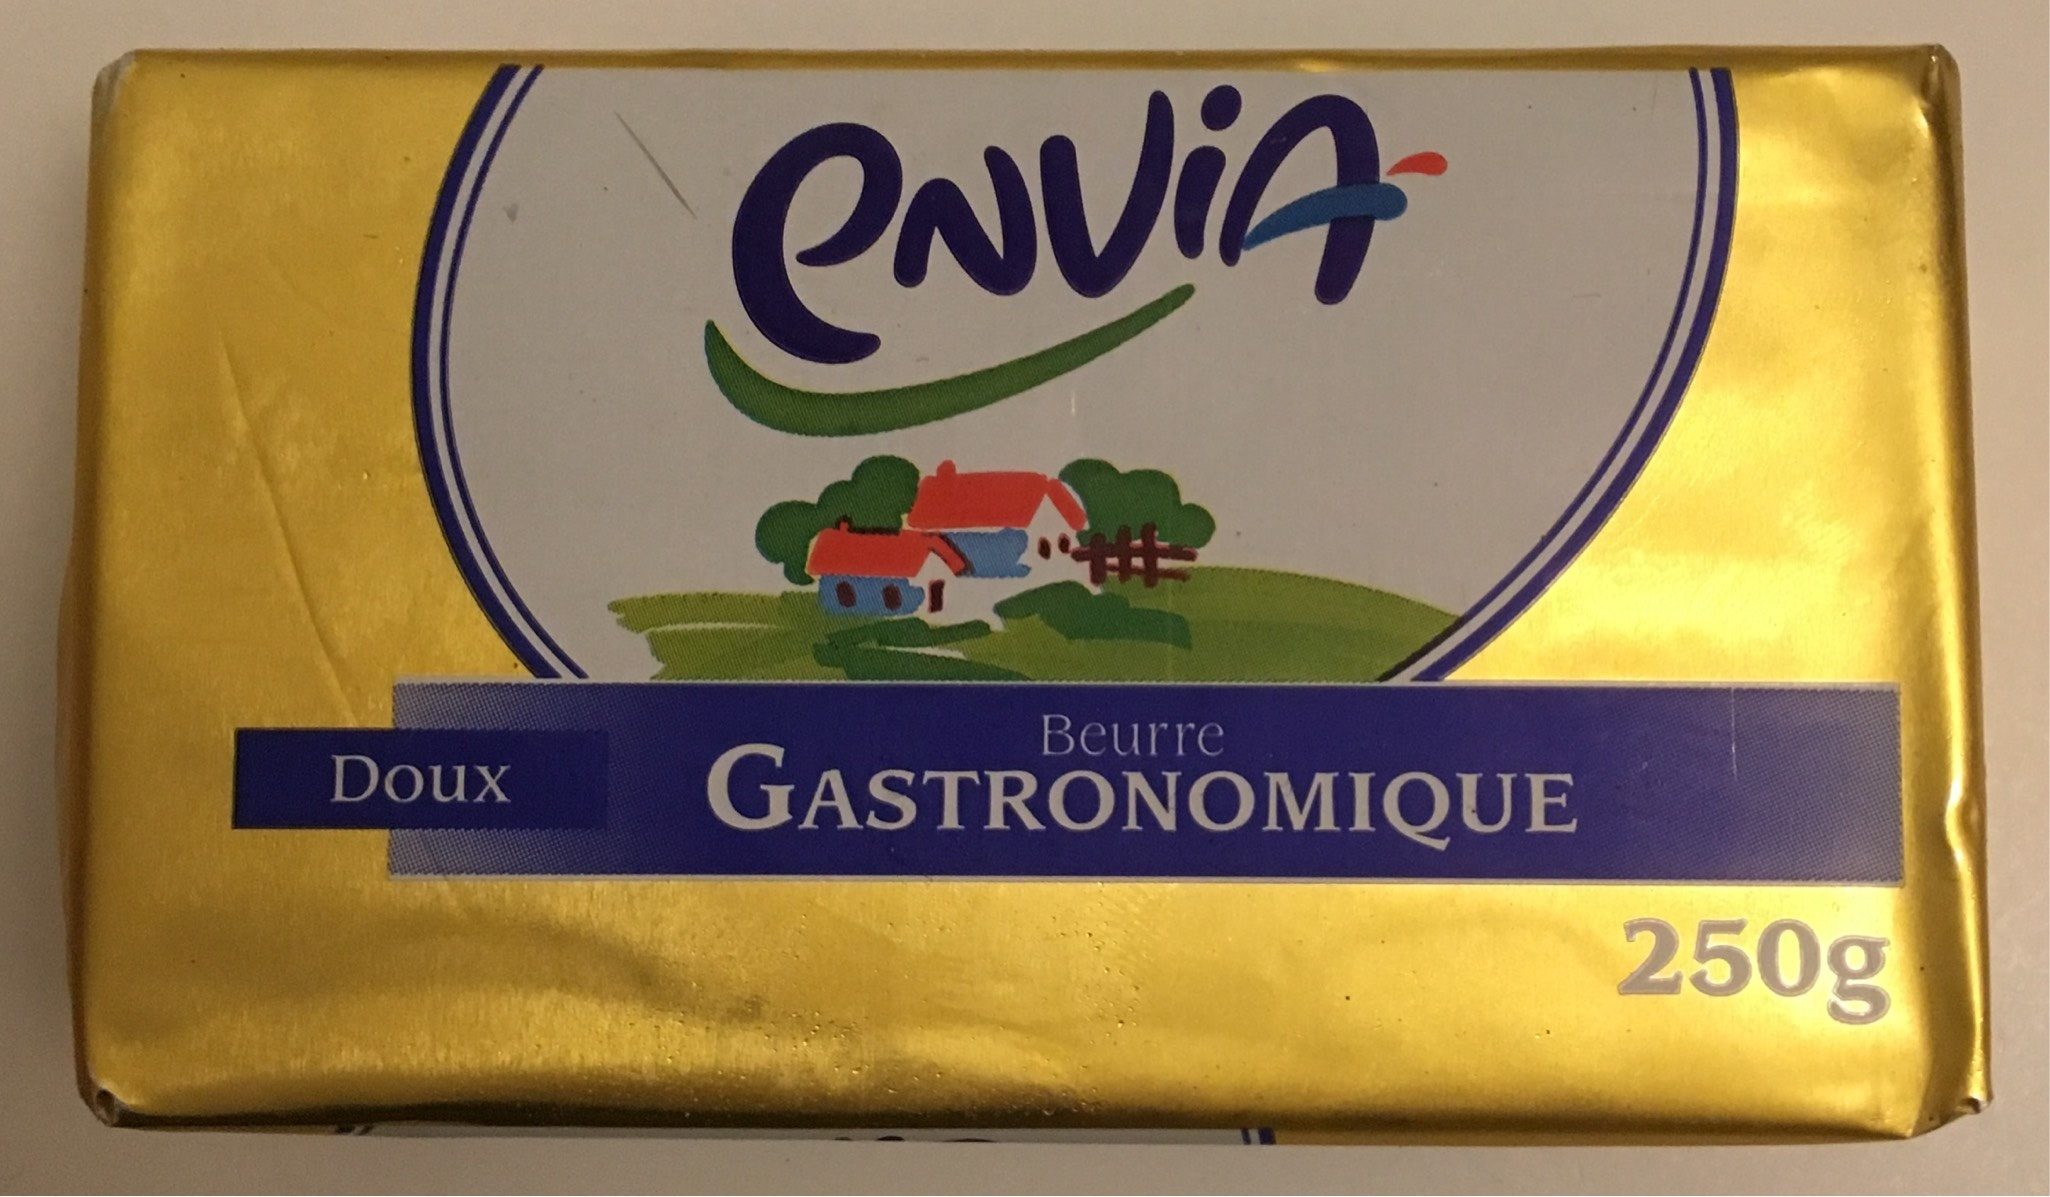 Beurre Gastronomique Doux - Product - fr